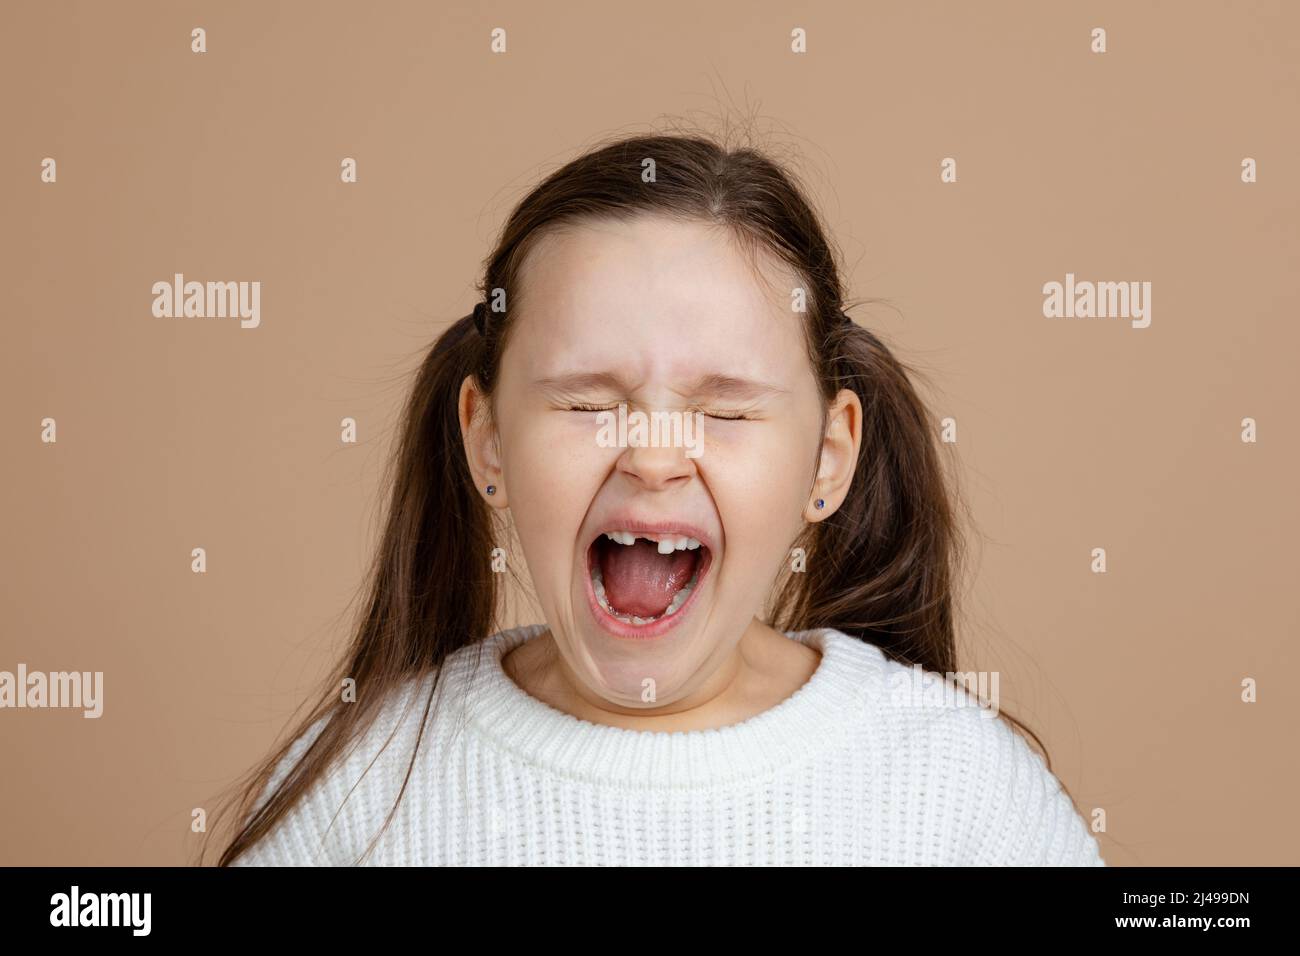 Bambino dispettoso immagini e fotografie stock ad alta risoluzione - Alamy